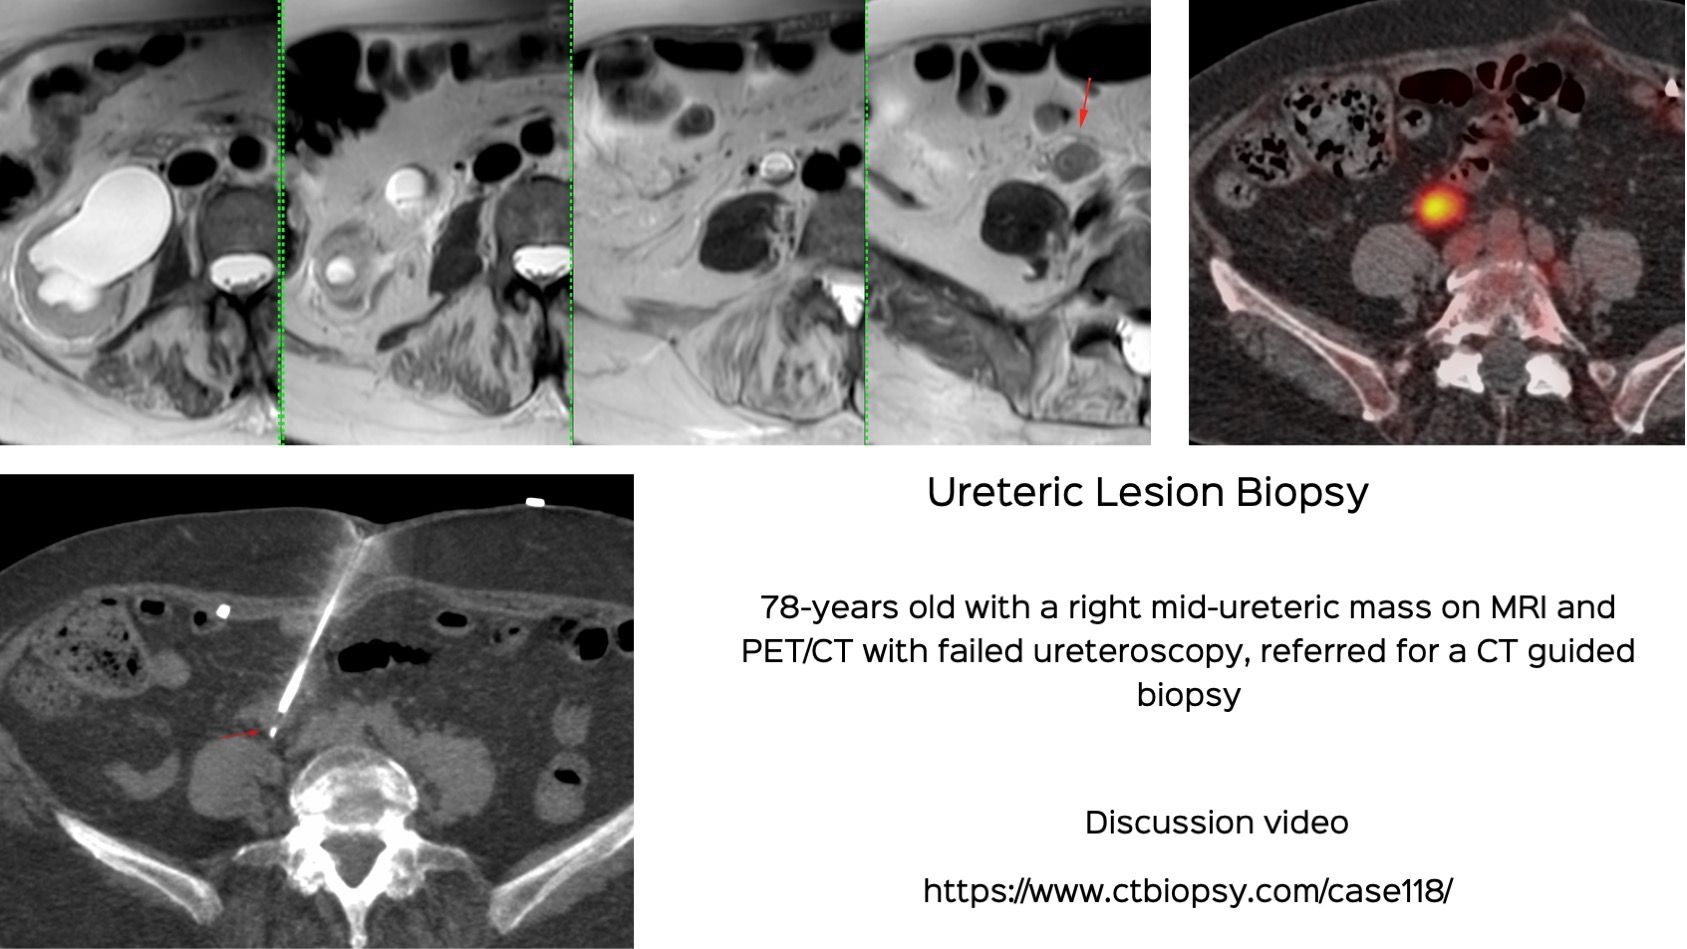 Case 118: Ureteric Lesion Biopsy